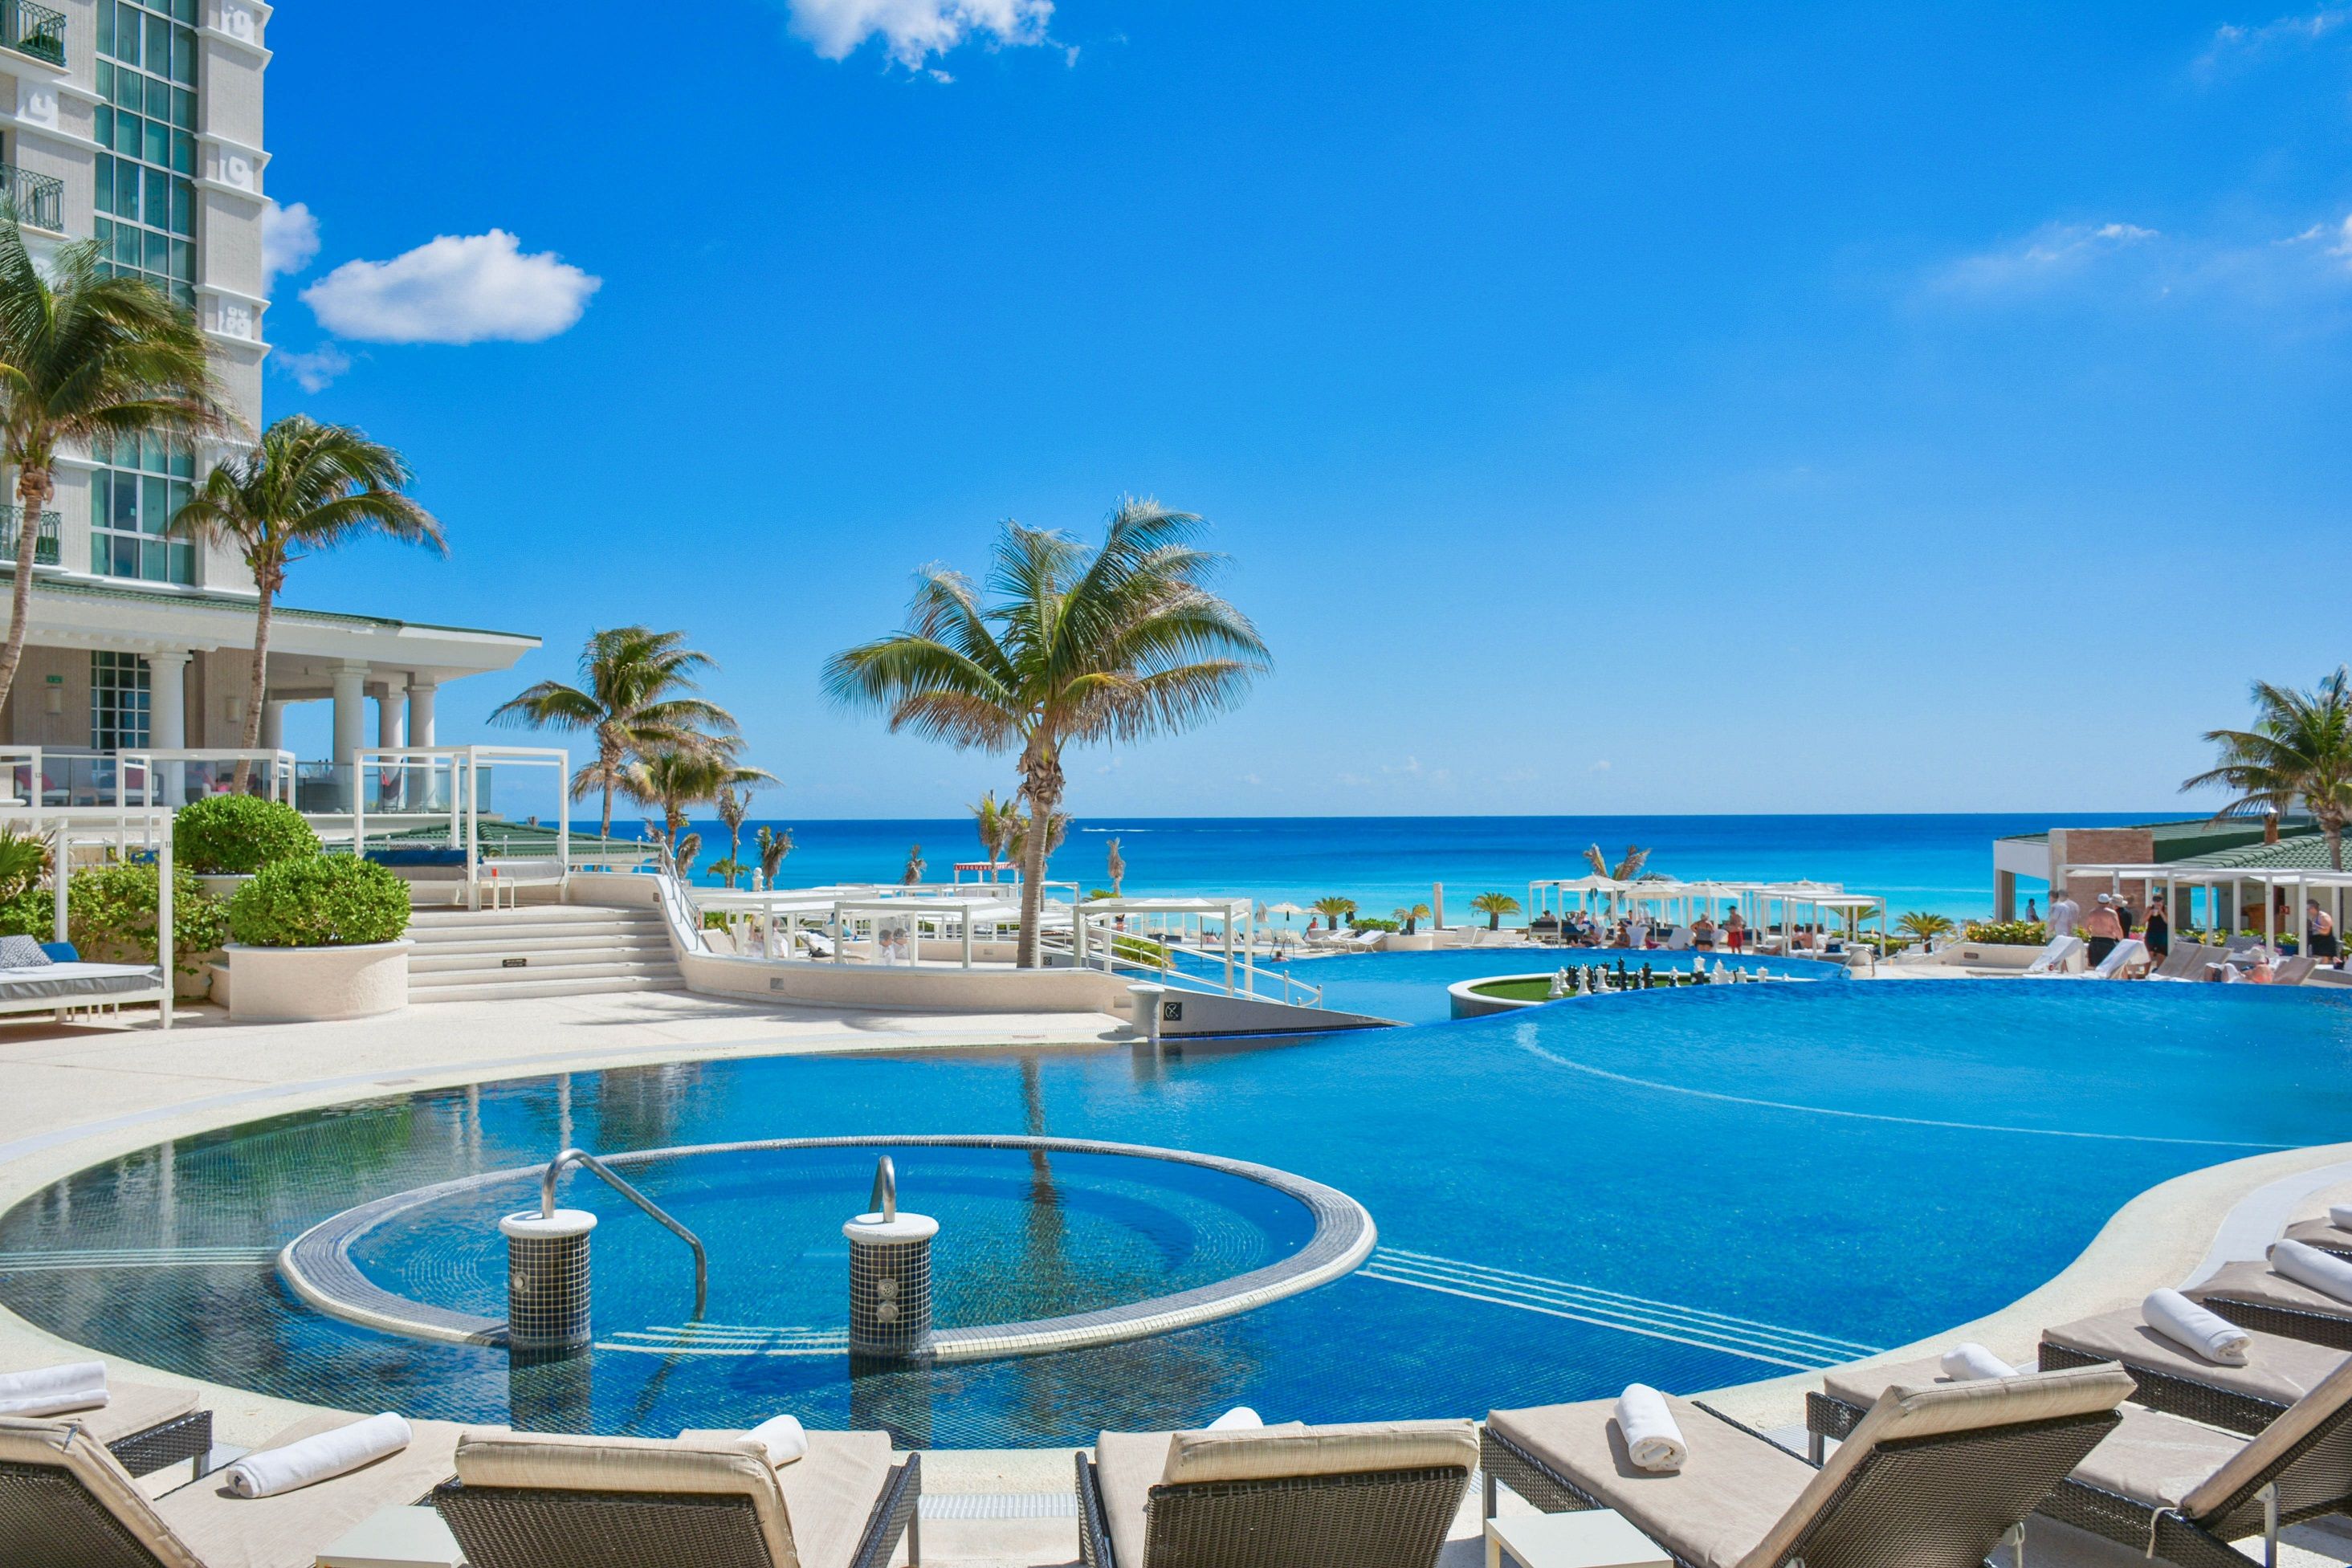 Mantente saludable y en forma en tus vacaciones a Cancún